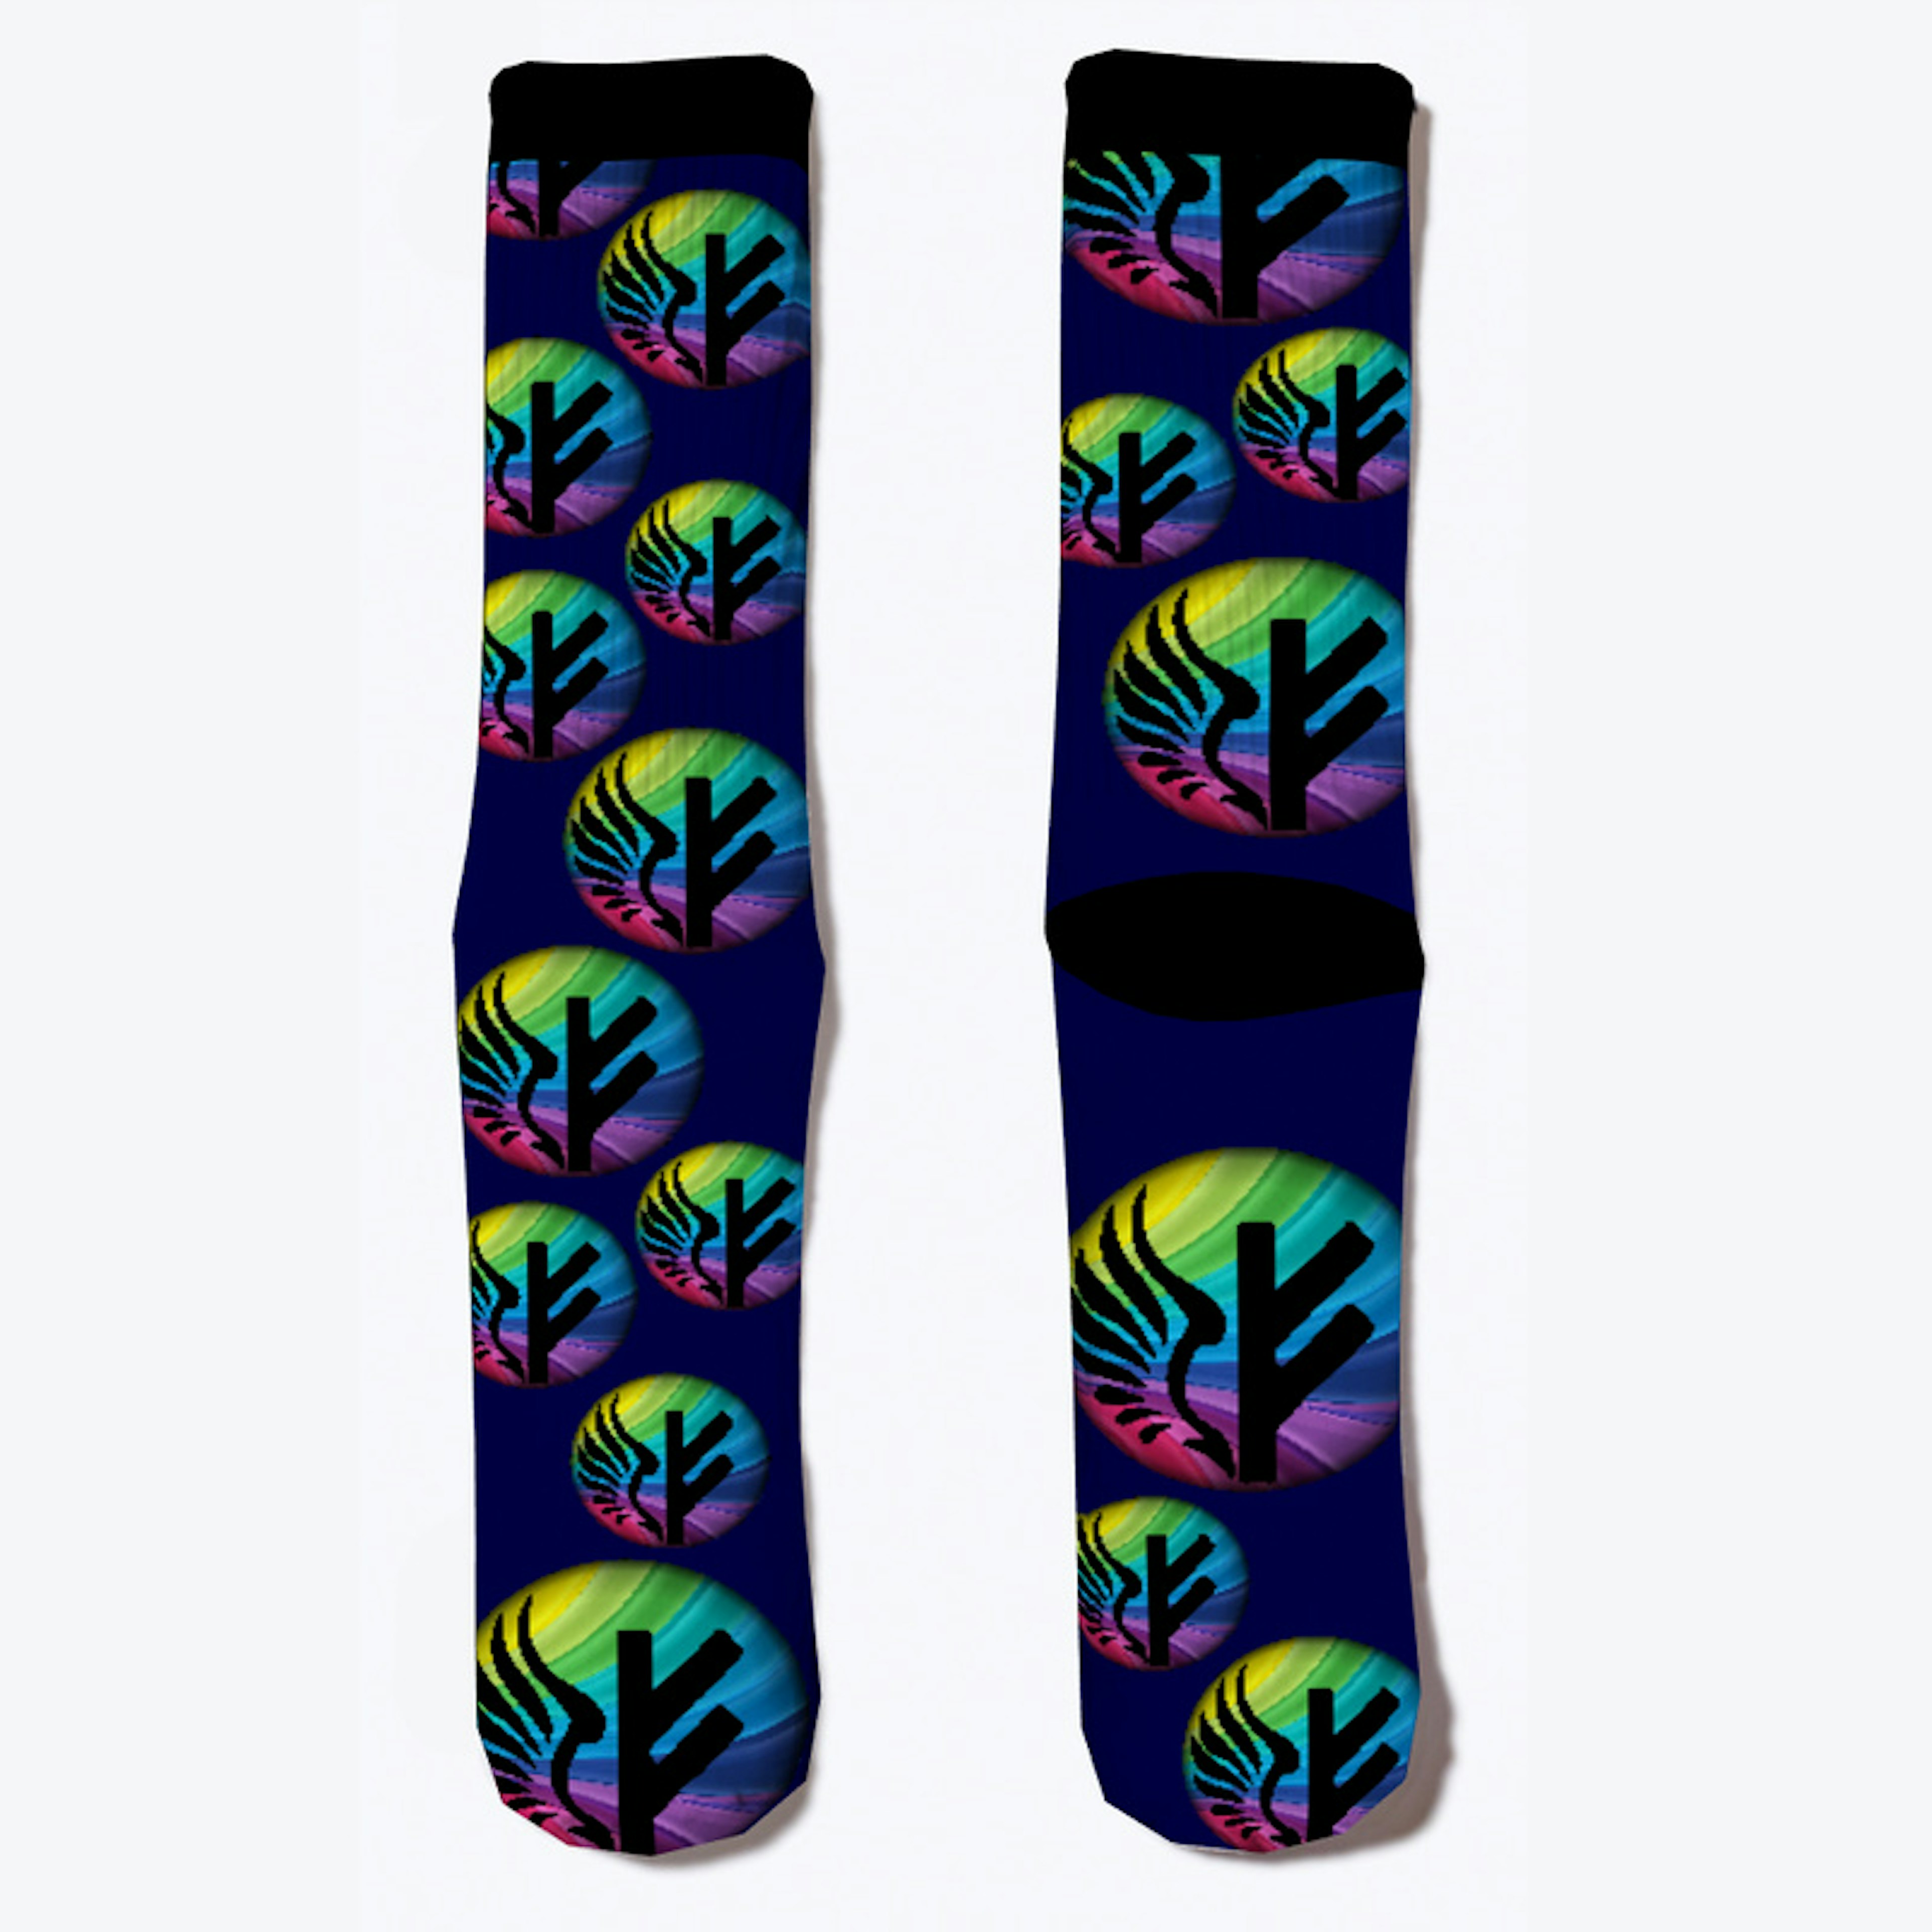 Freyja Rainbow socks!